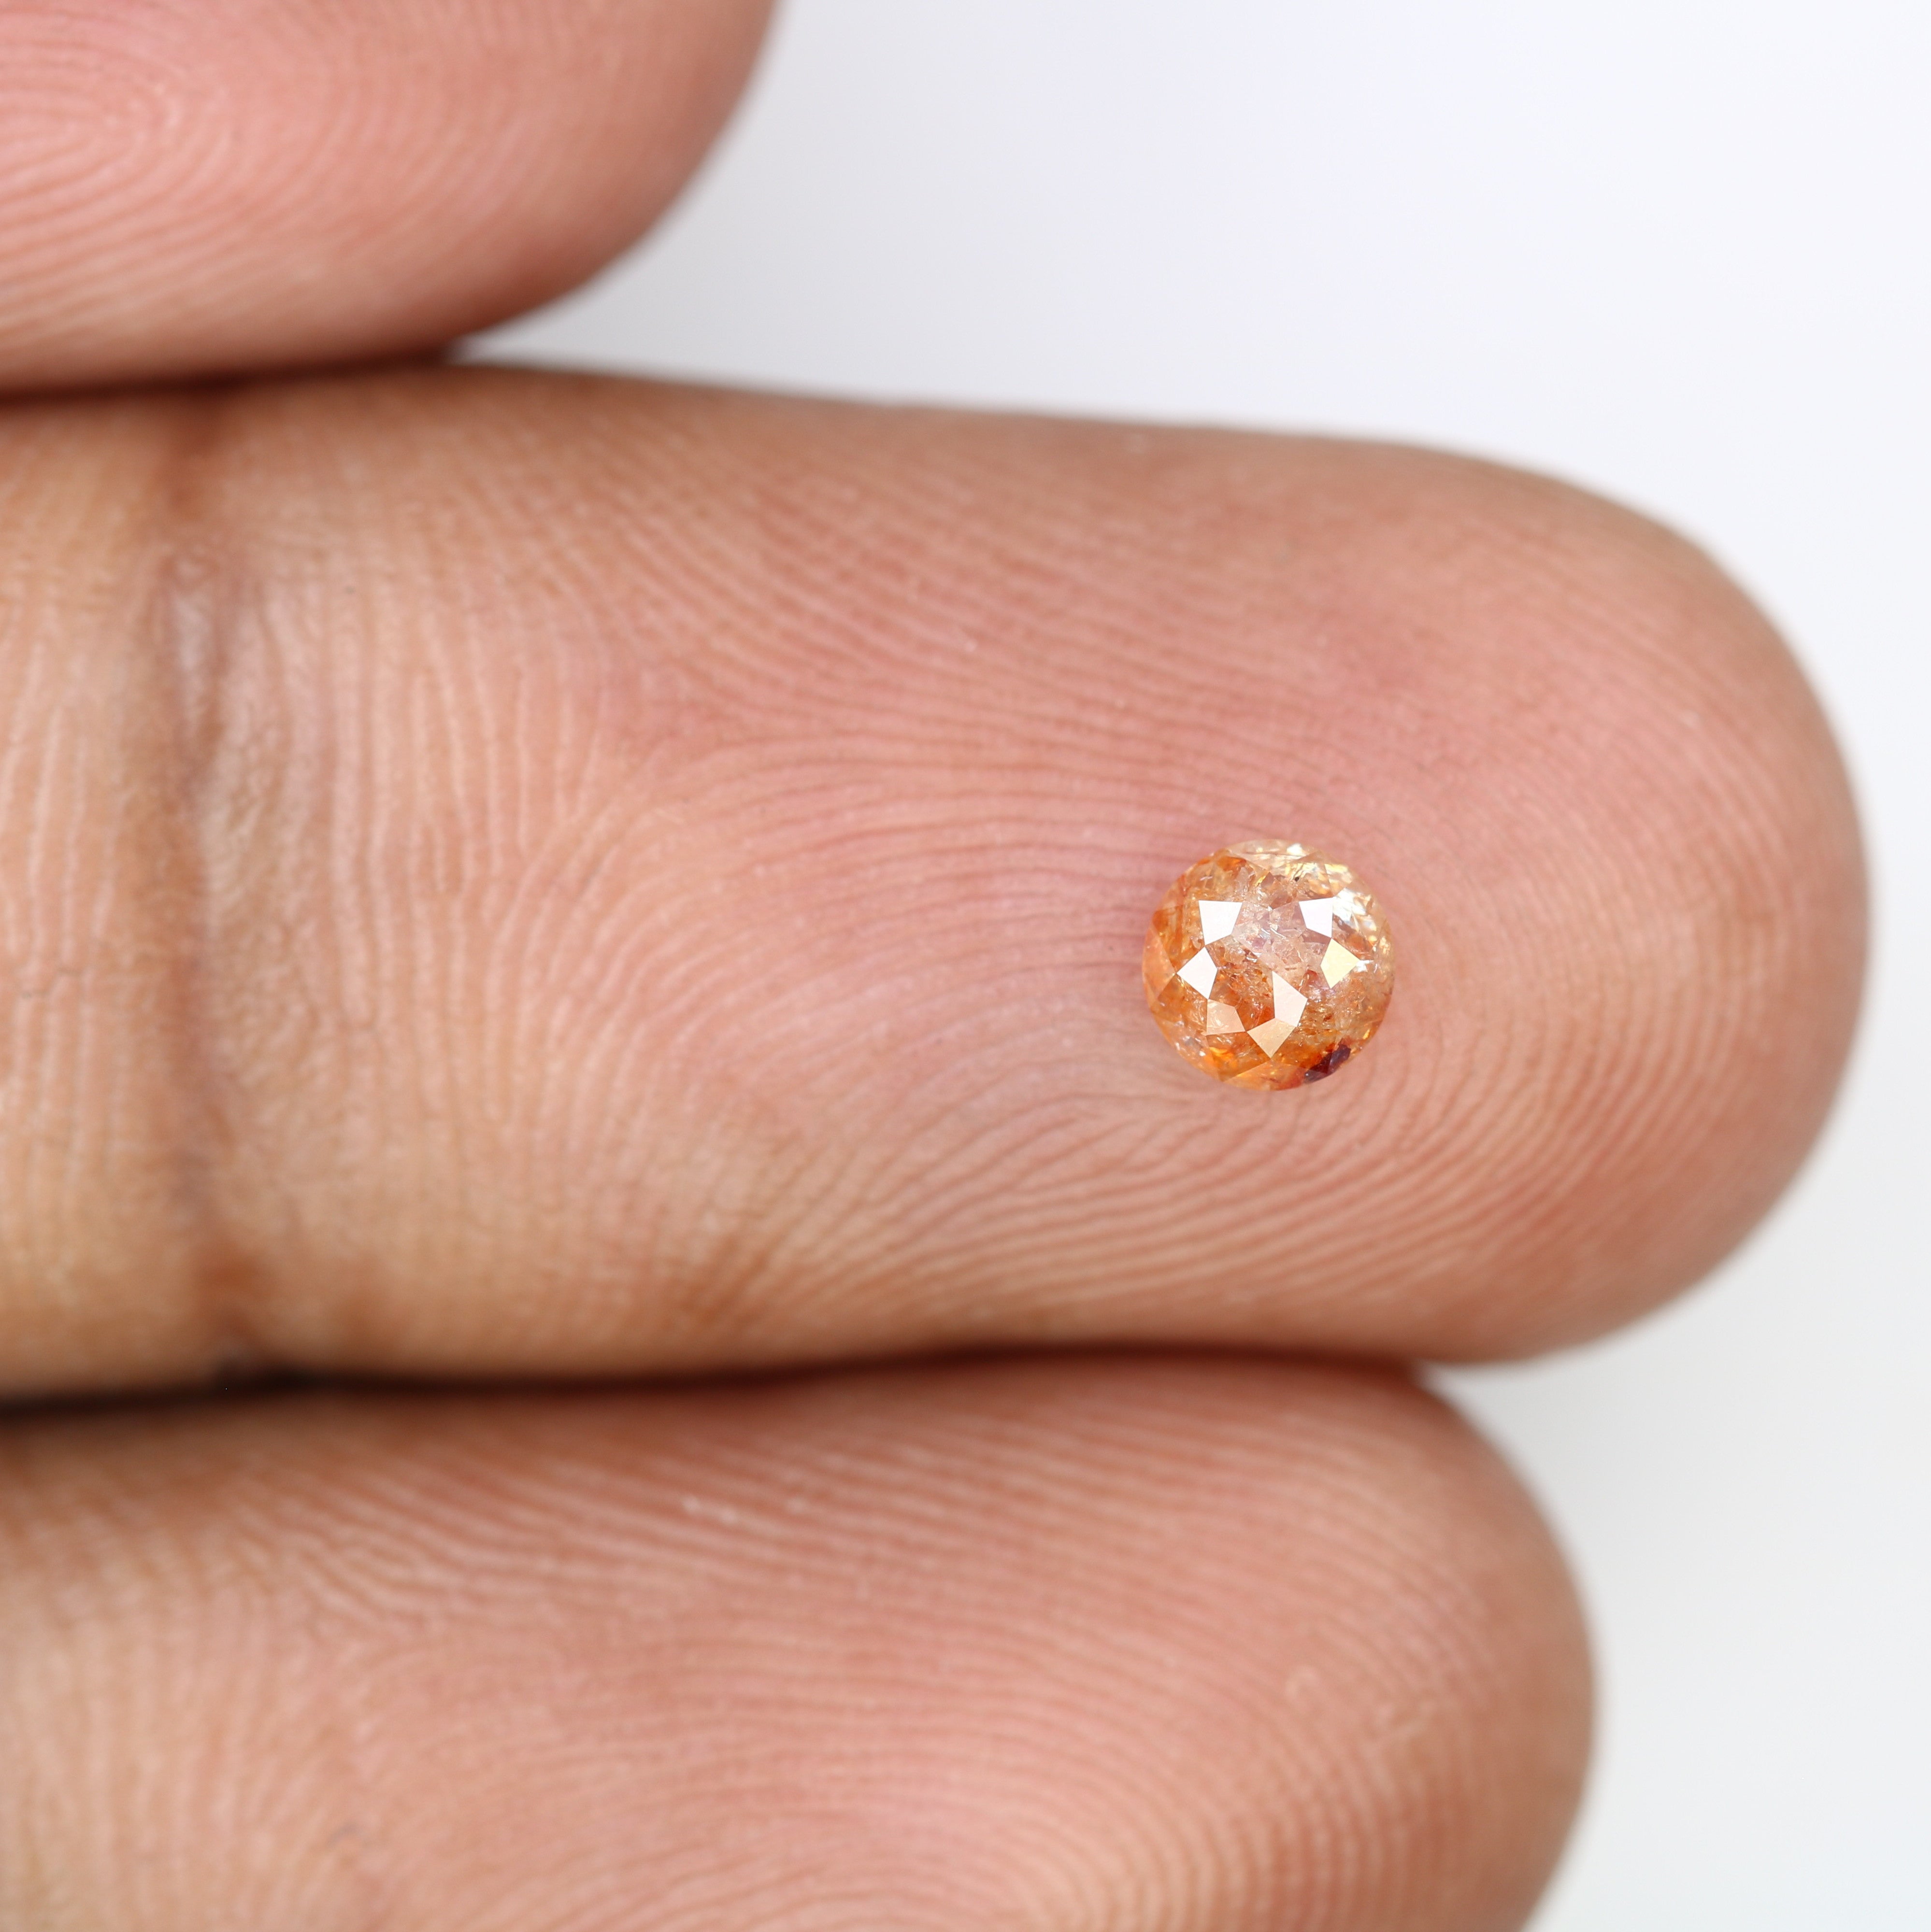 0.35 CT Round Rose Cut Unique Peach Diamond For Engagement Ring